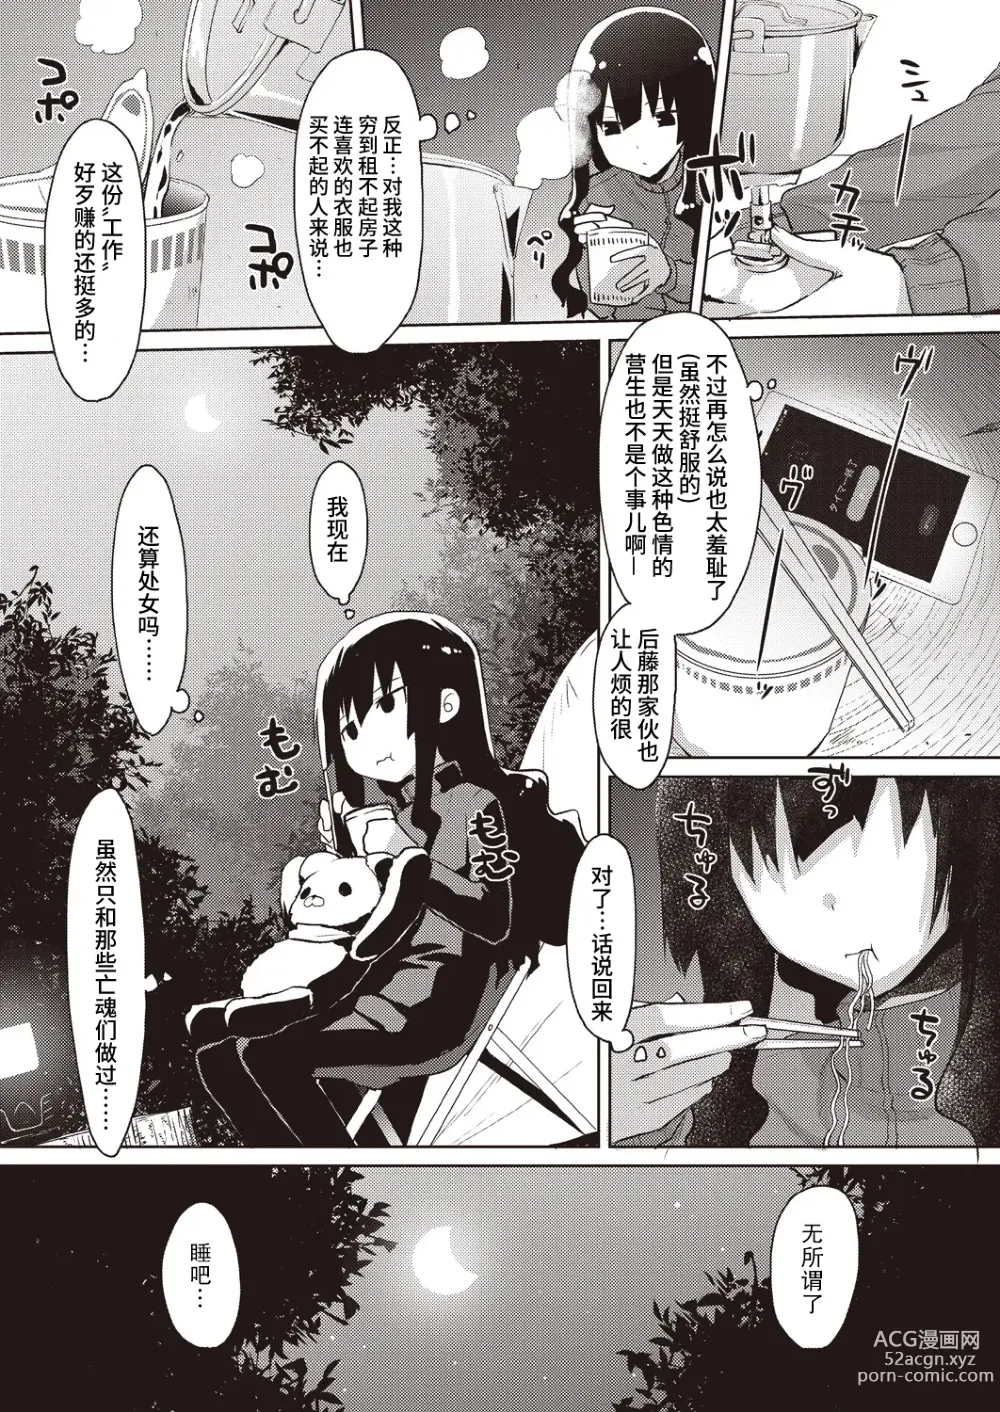 Page 9 of manga Kareobana Kitan Ch.1